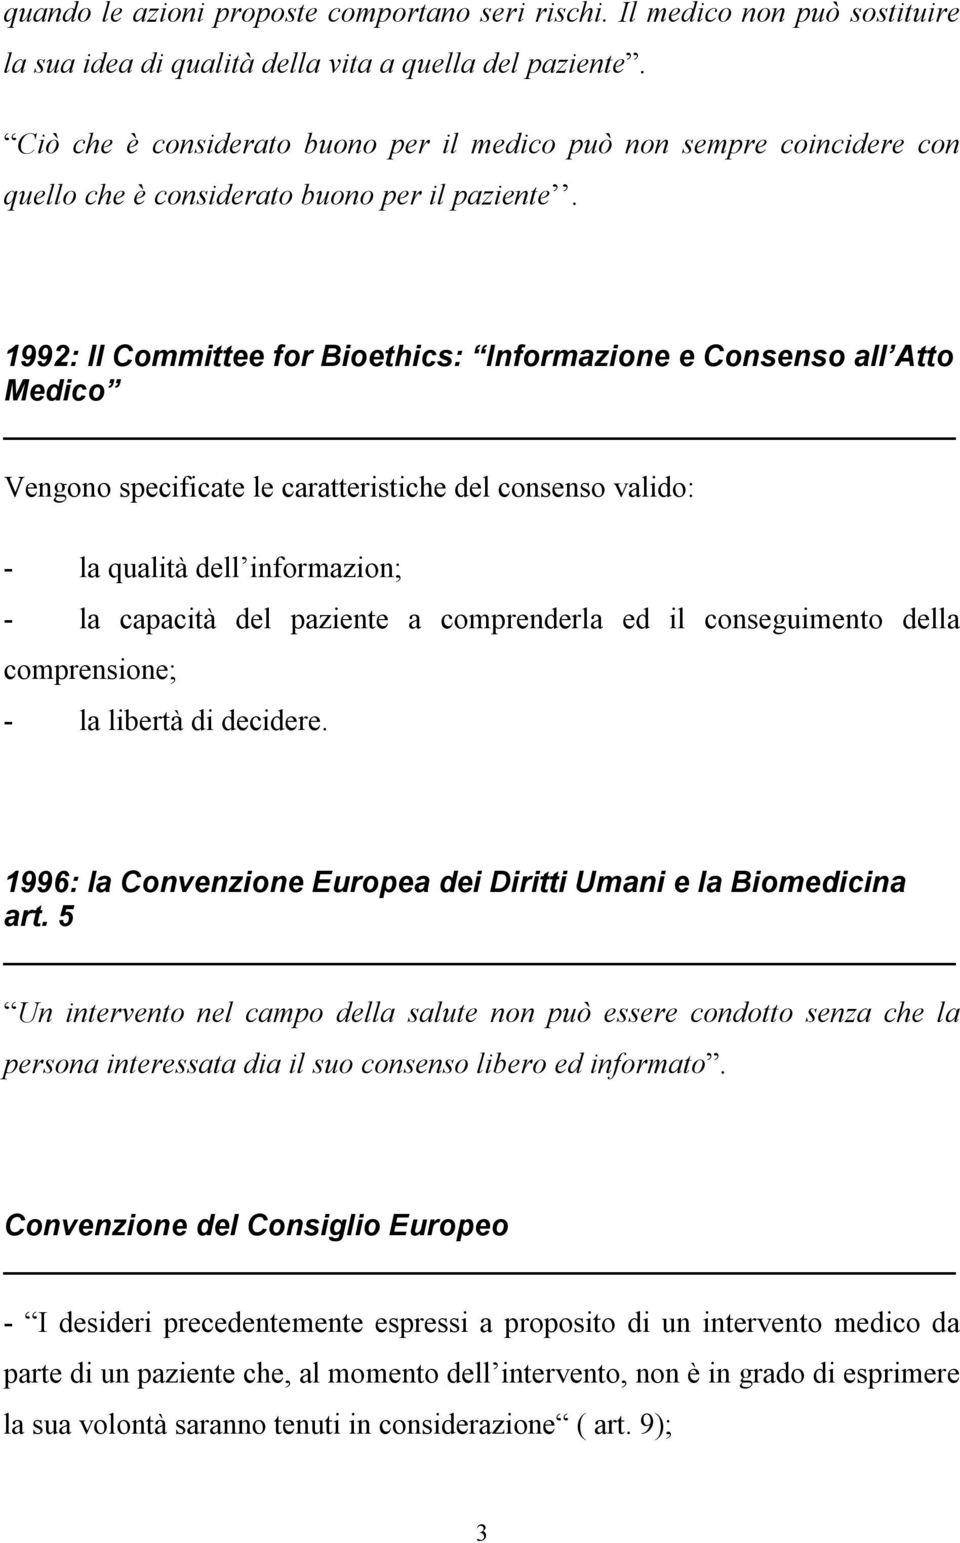 1992: Il Committee for Bioethics: Informazione e Consenso all Atto Medico Vengono specificate le caratteristiche del consenso valido: - la qualità dell informazion; - la capacità del paziente a